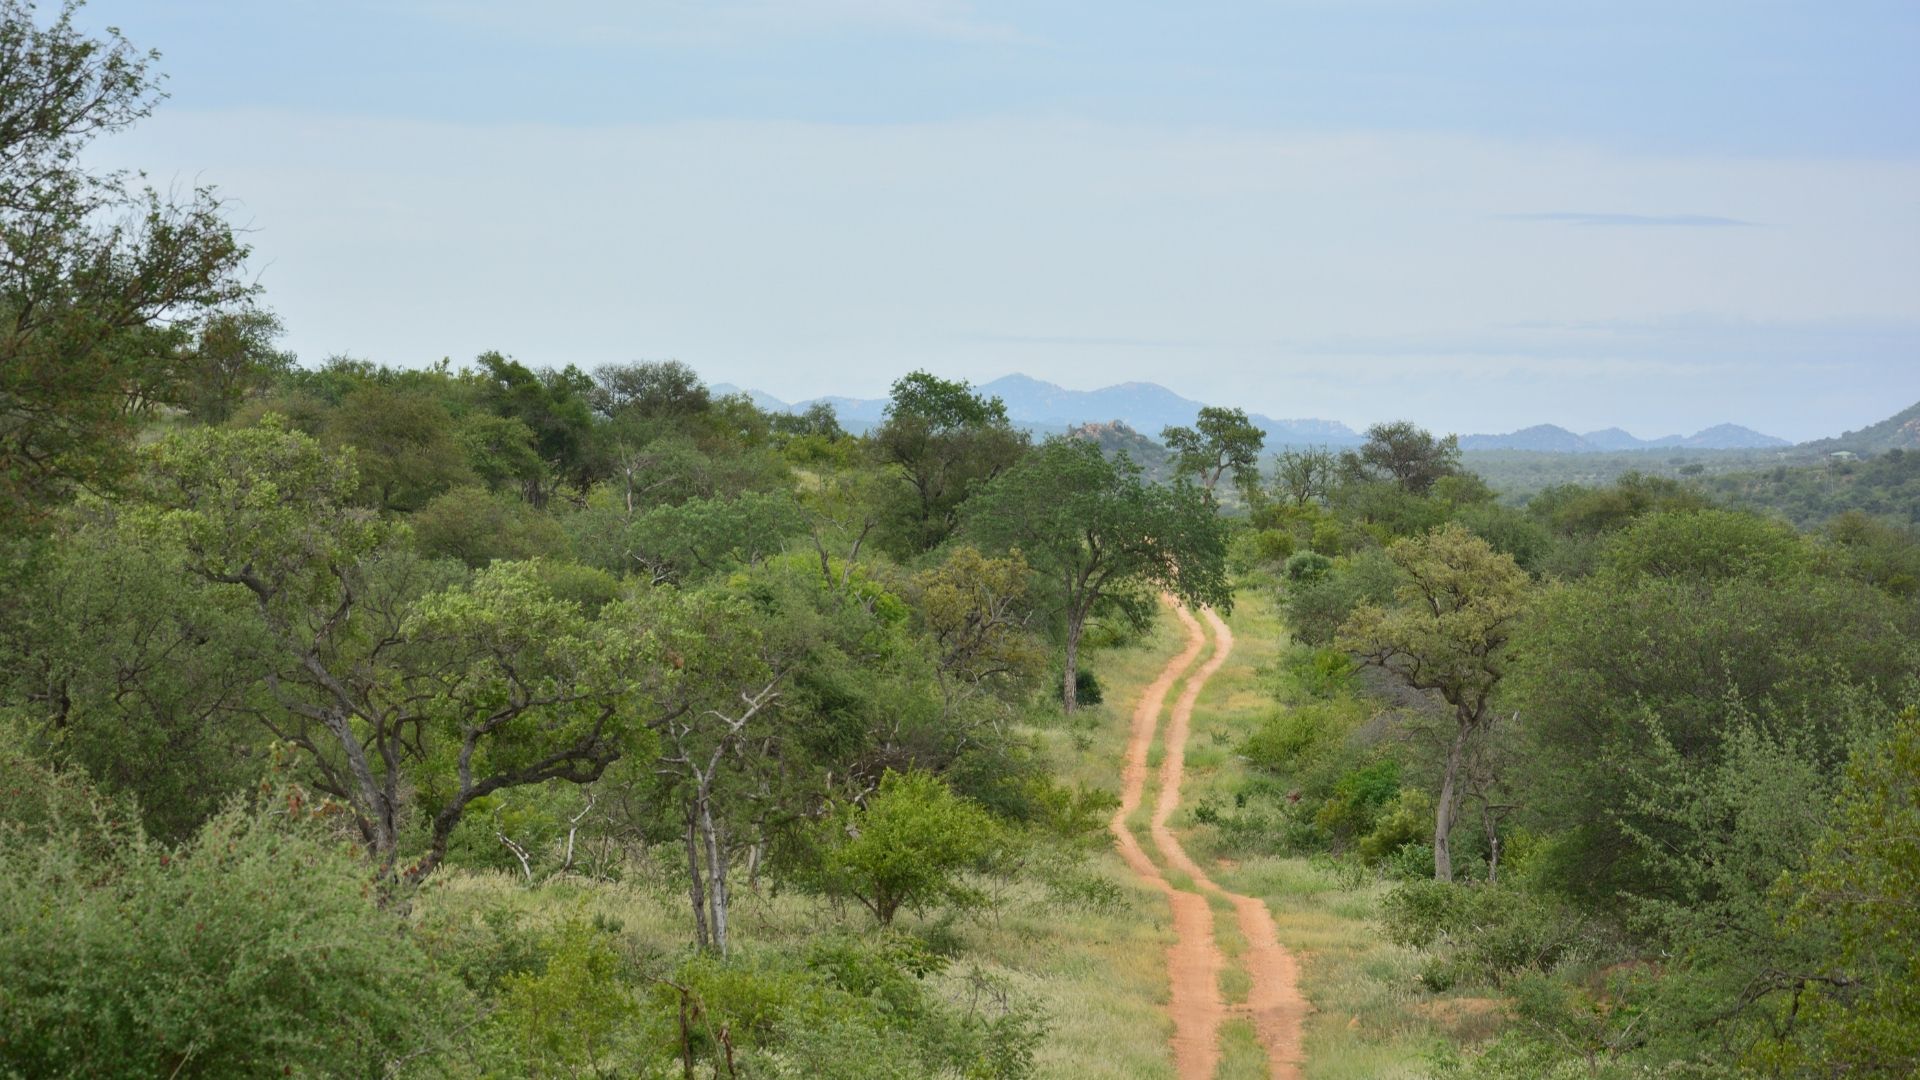 Salvaguardia dell’ambiente come alternativa al safari in Sudafrica: la storia di Jessica